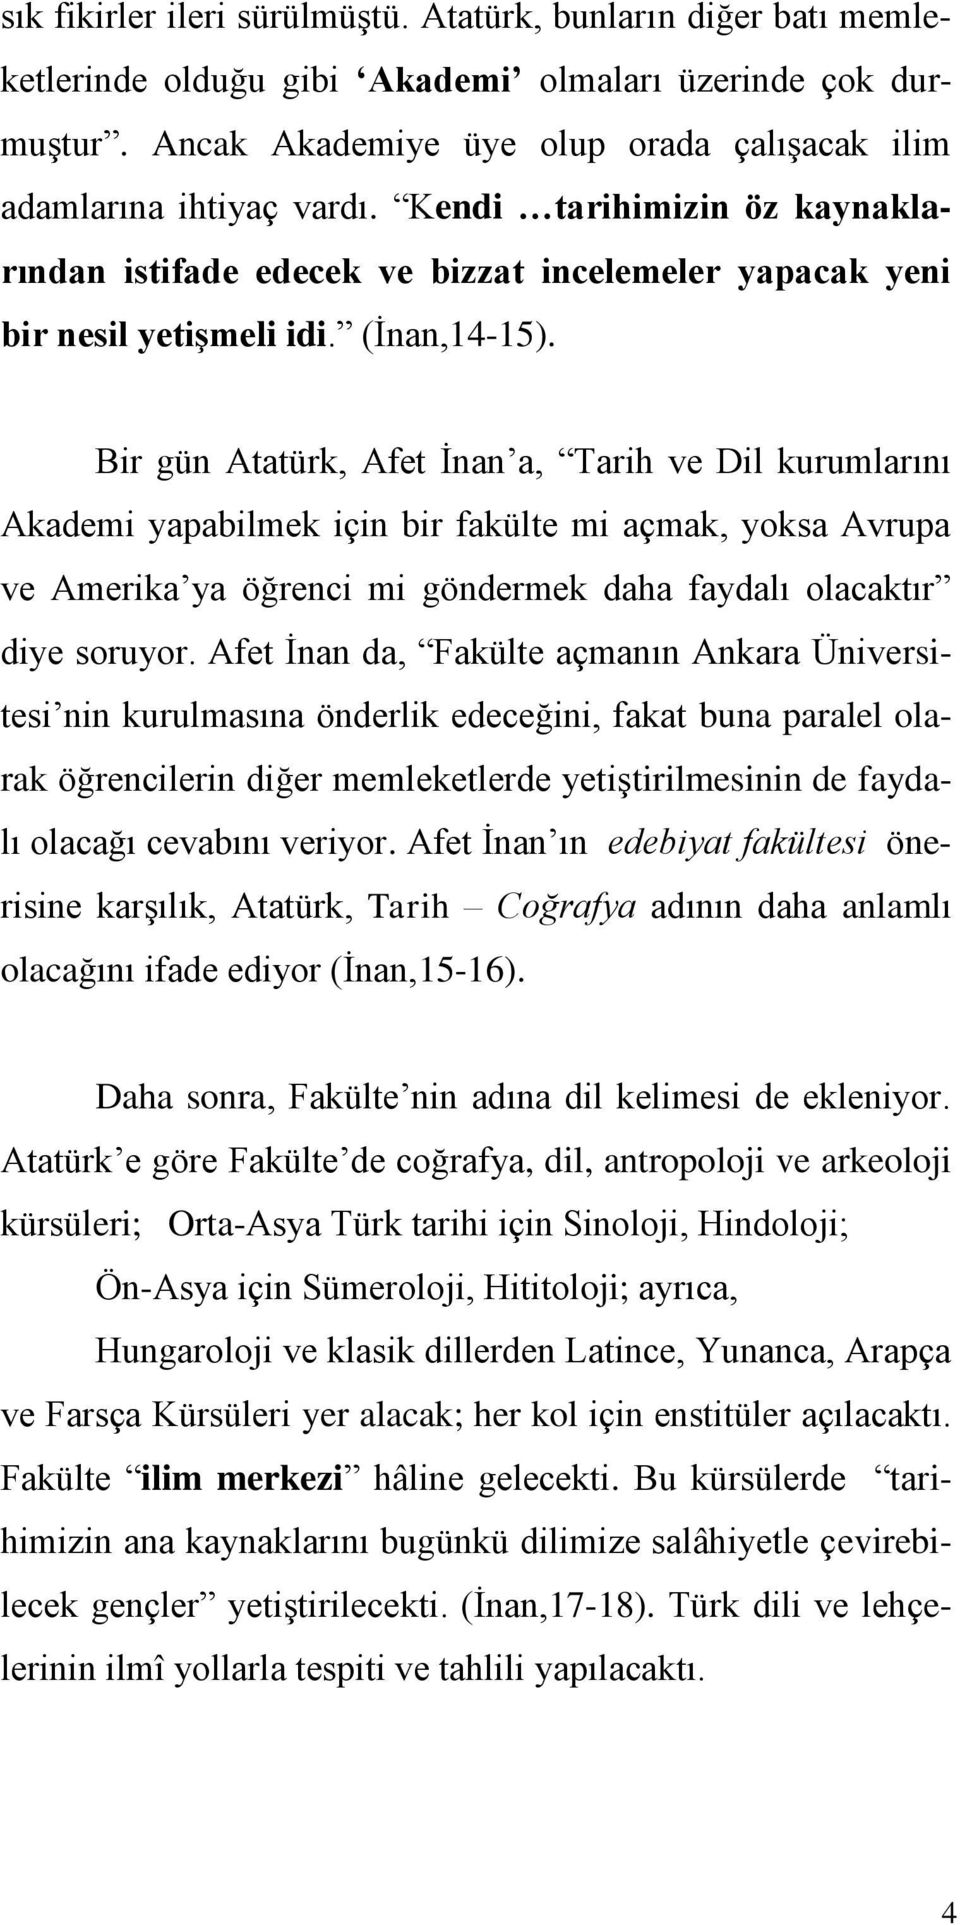 Bir gün Atatürk, Afet İnan a, Tarih ve Dil kurumlarını Akademi yapabilmek için bir fakülte mi açmak, yoksa Avrupa ve Amerika ya öğrenci mi göndermek daha faydalı olacaktır diye soruyor.